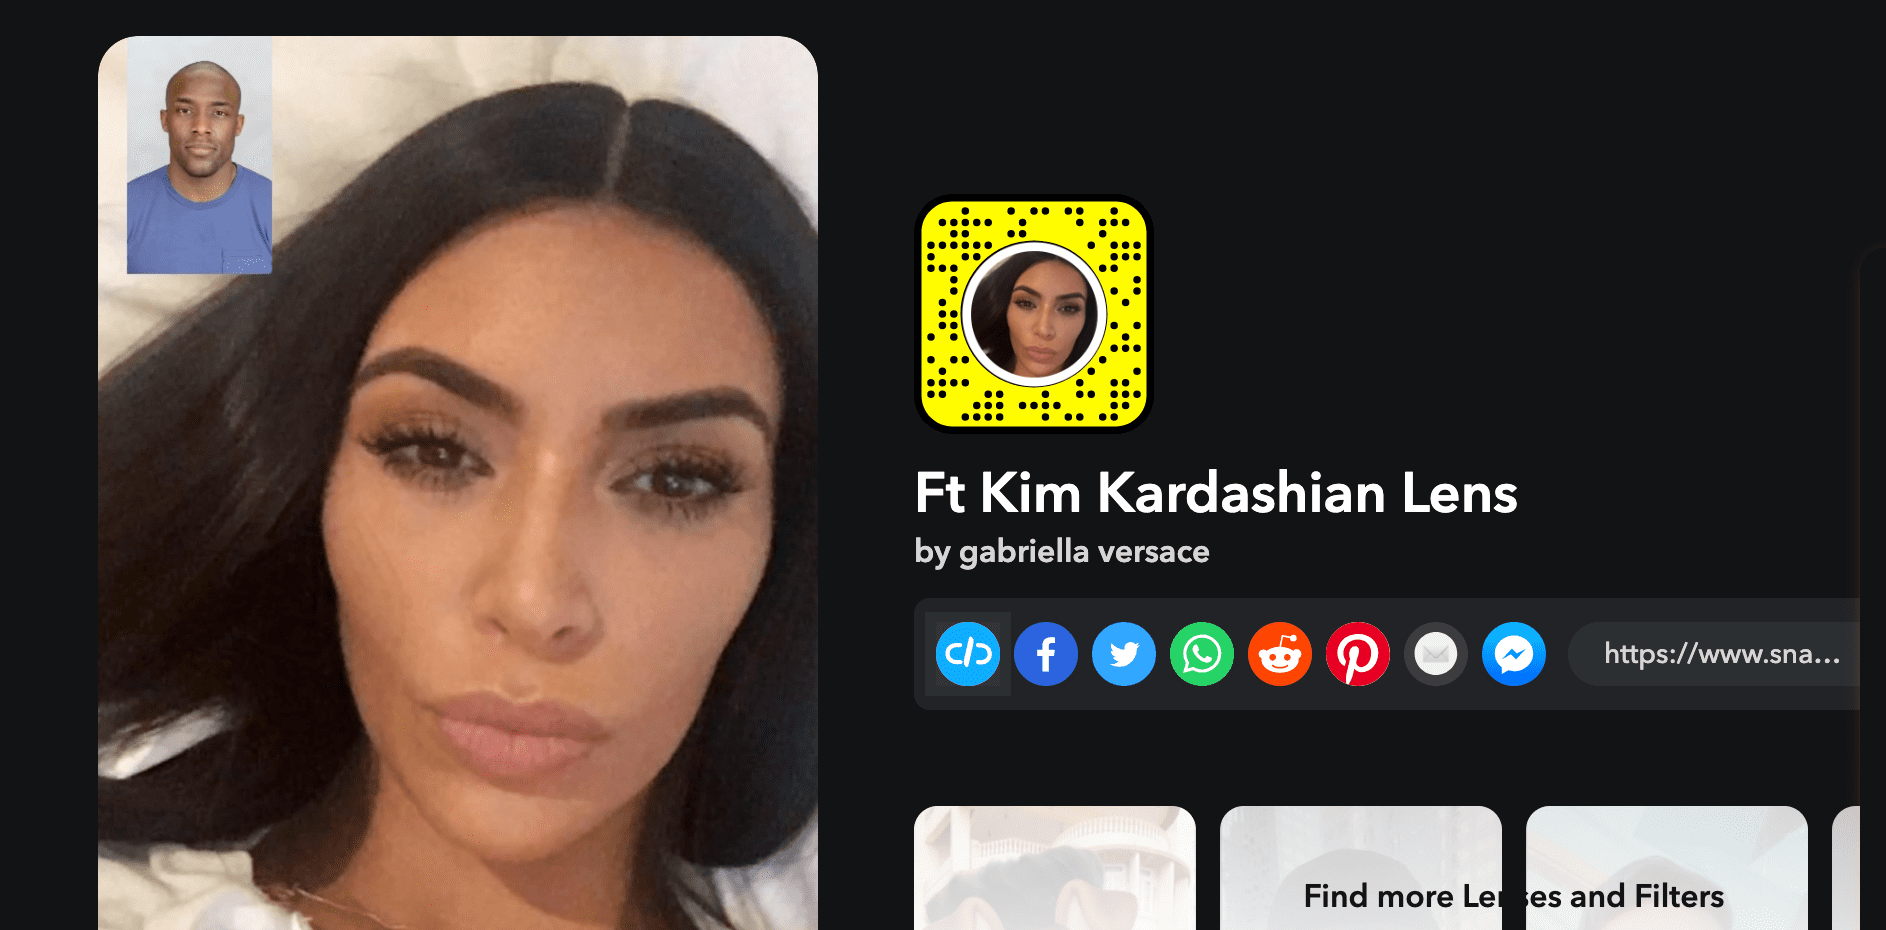 Ft Kim Kardashian Lens by gabriella versace